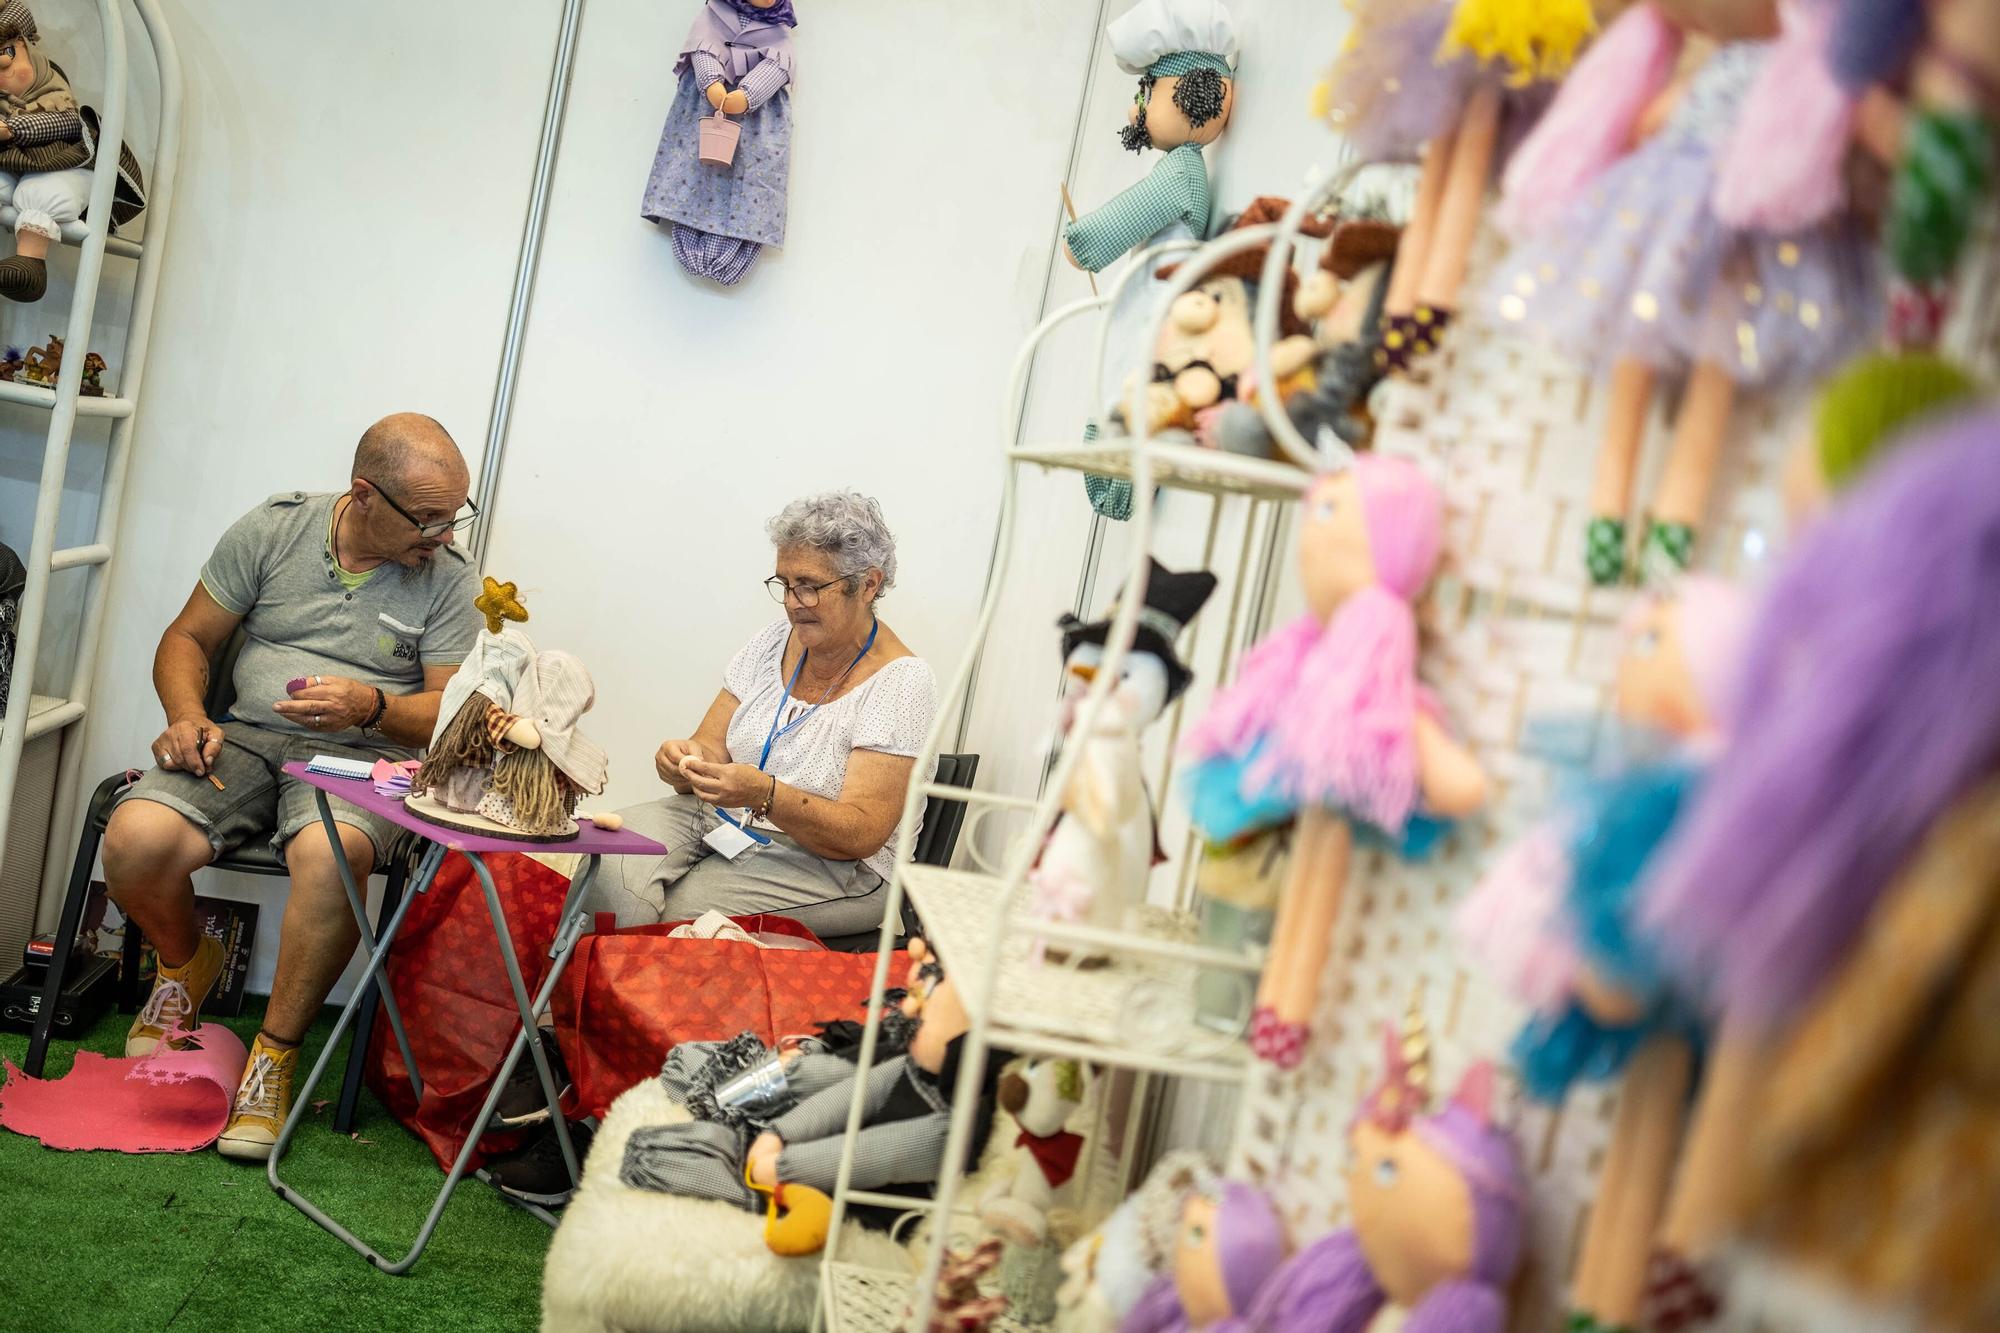 Un homenaje en Tenerife al Carnaval Internacional en la Feria Tricontinental de Artesanía